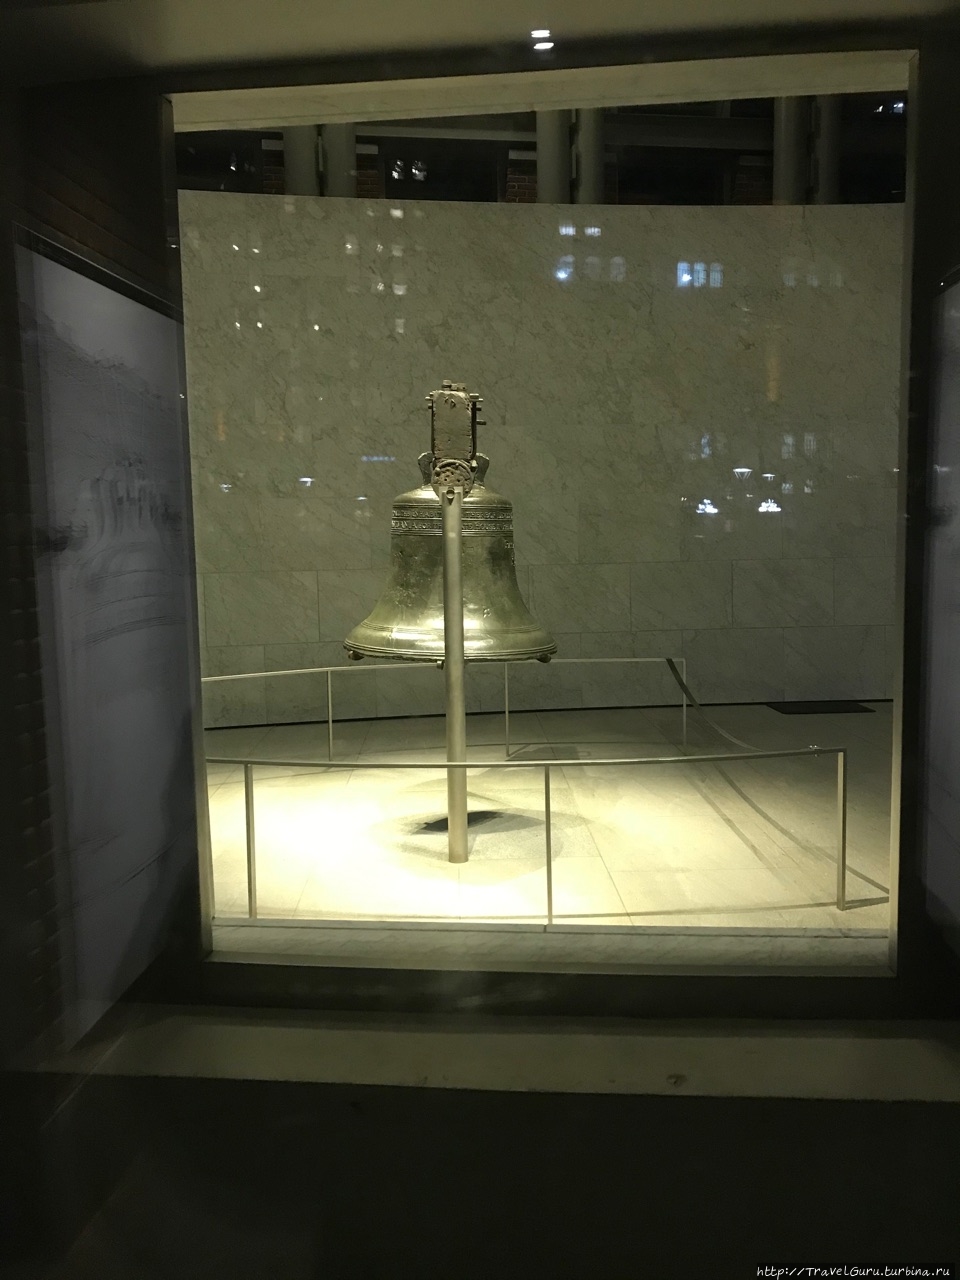 Колокол Свободы, звон которого собрал жителей Филадельфии на оглашение Декларации о независимости Филадельфия, CША